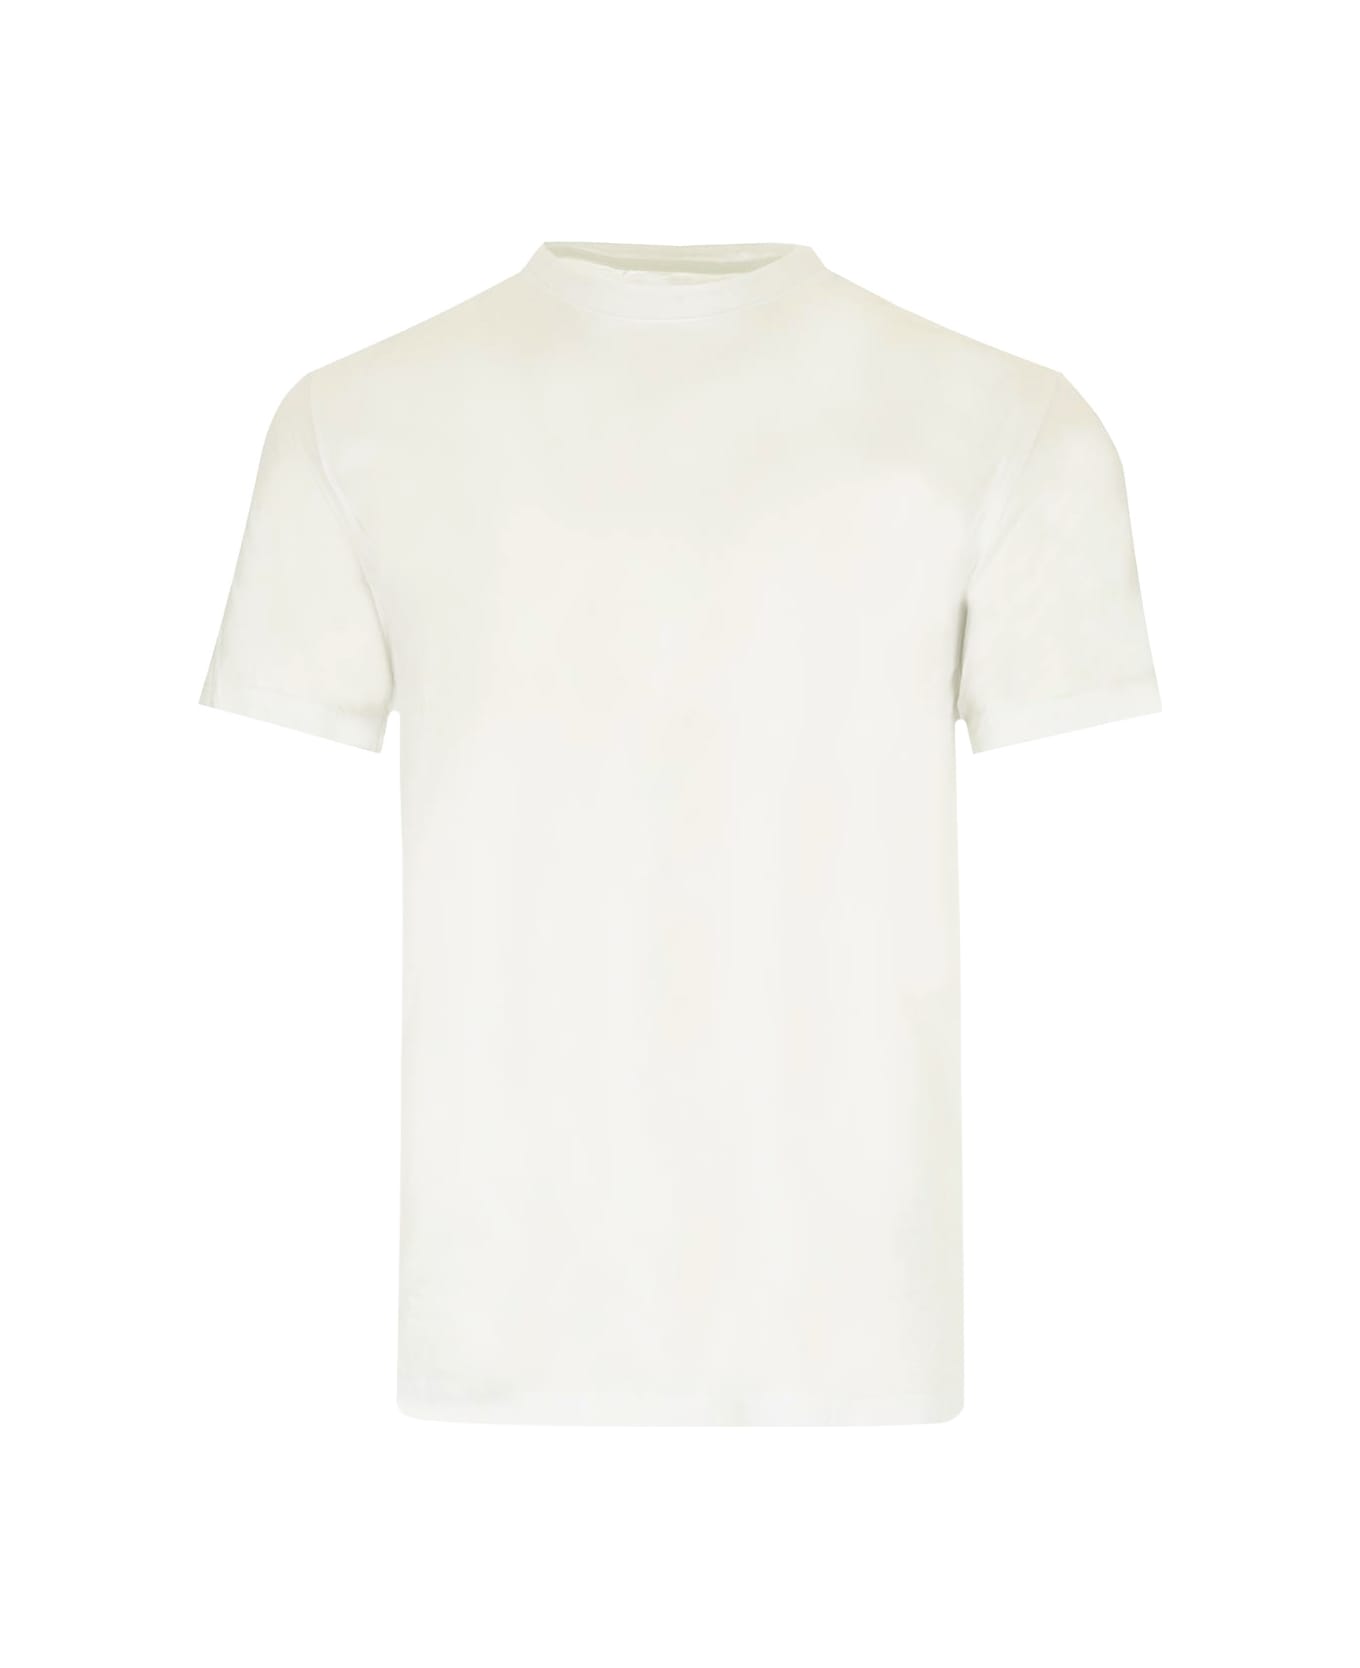 Maison Margiela White Cotton T-shirt - WHITE/NEUTRALS